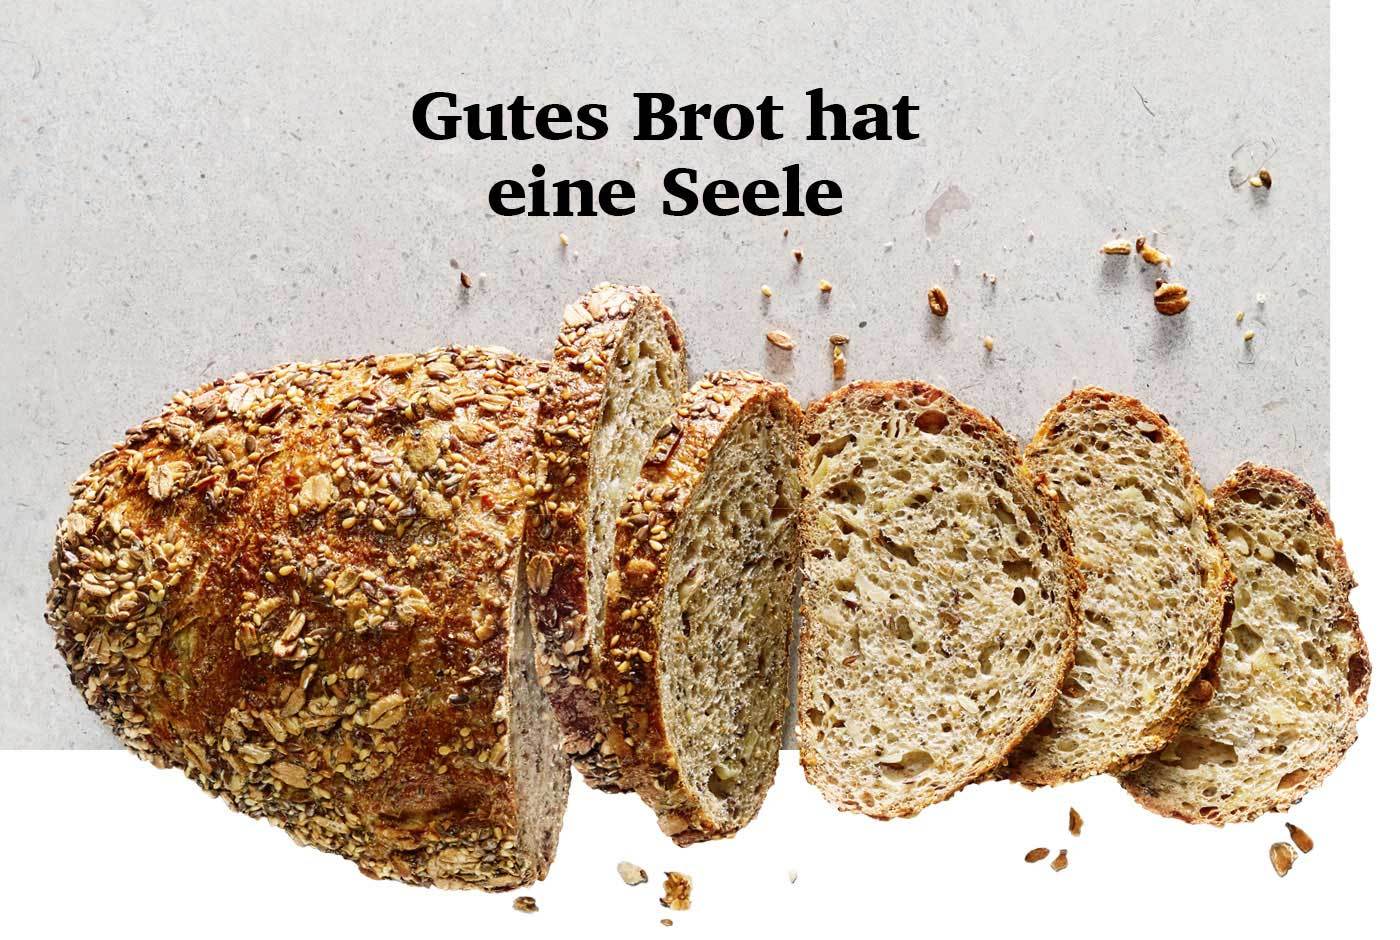 Bäcker Happ hat mehr als 60 verschiedene Brote im Sortiment, alle mit handwerklichem Know-how und viel Liebe gebacken.